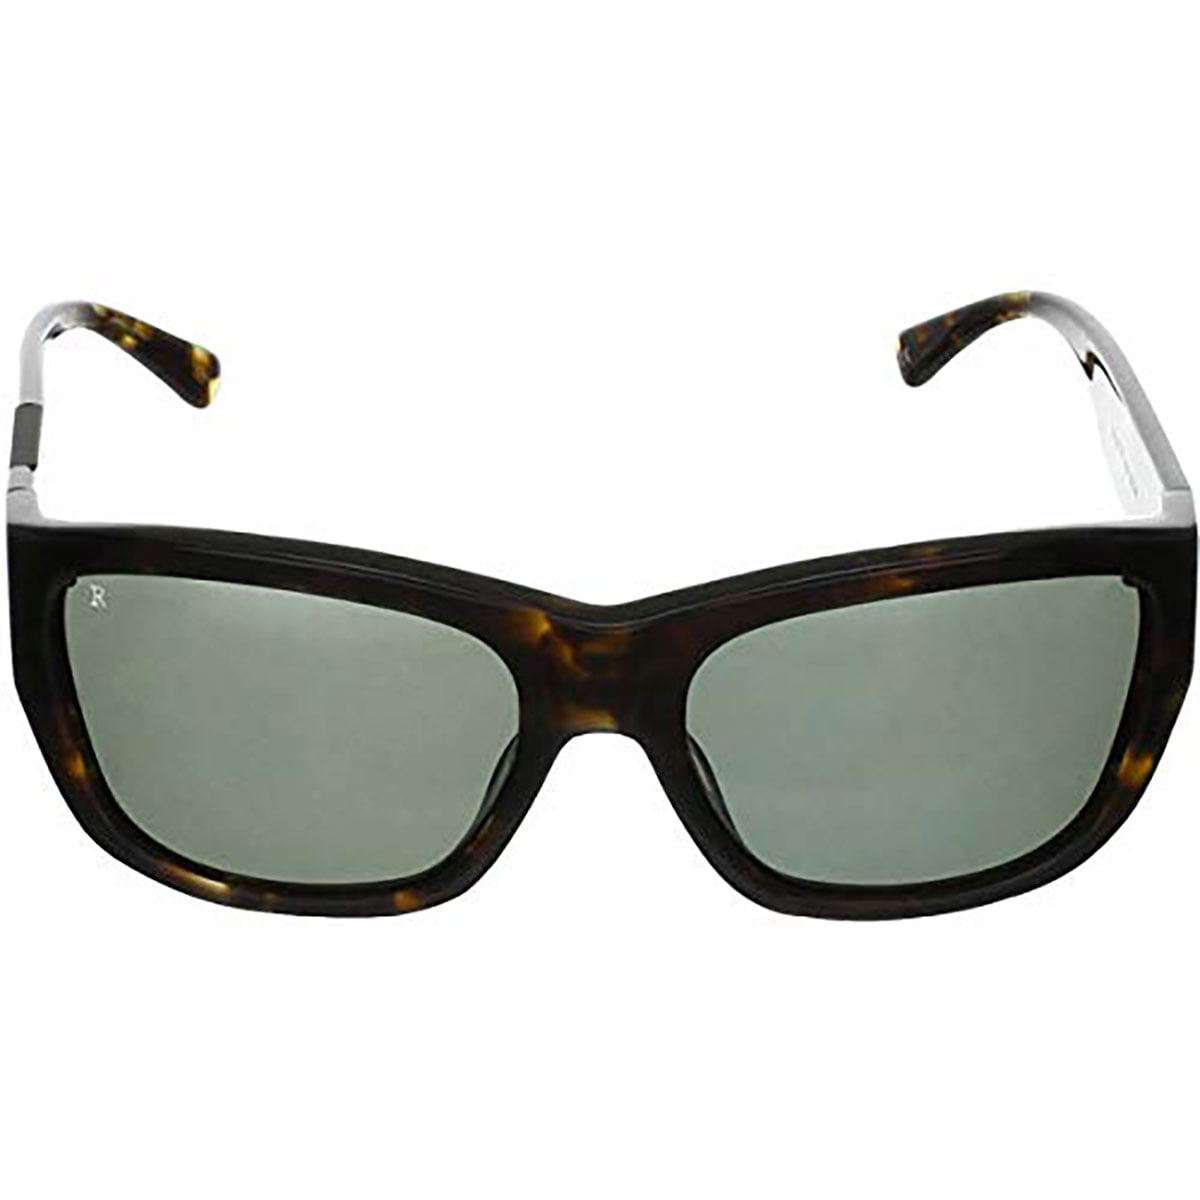 Retrosuperfuture W Dark Brown Fashion Sunglasses Super-421 58mm Fast Shipping 